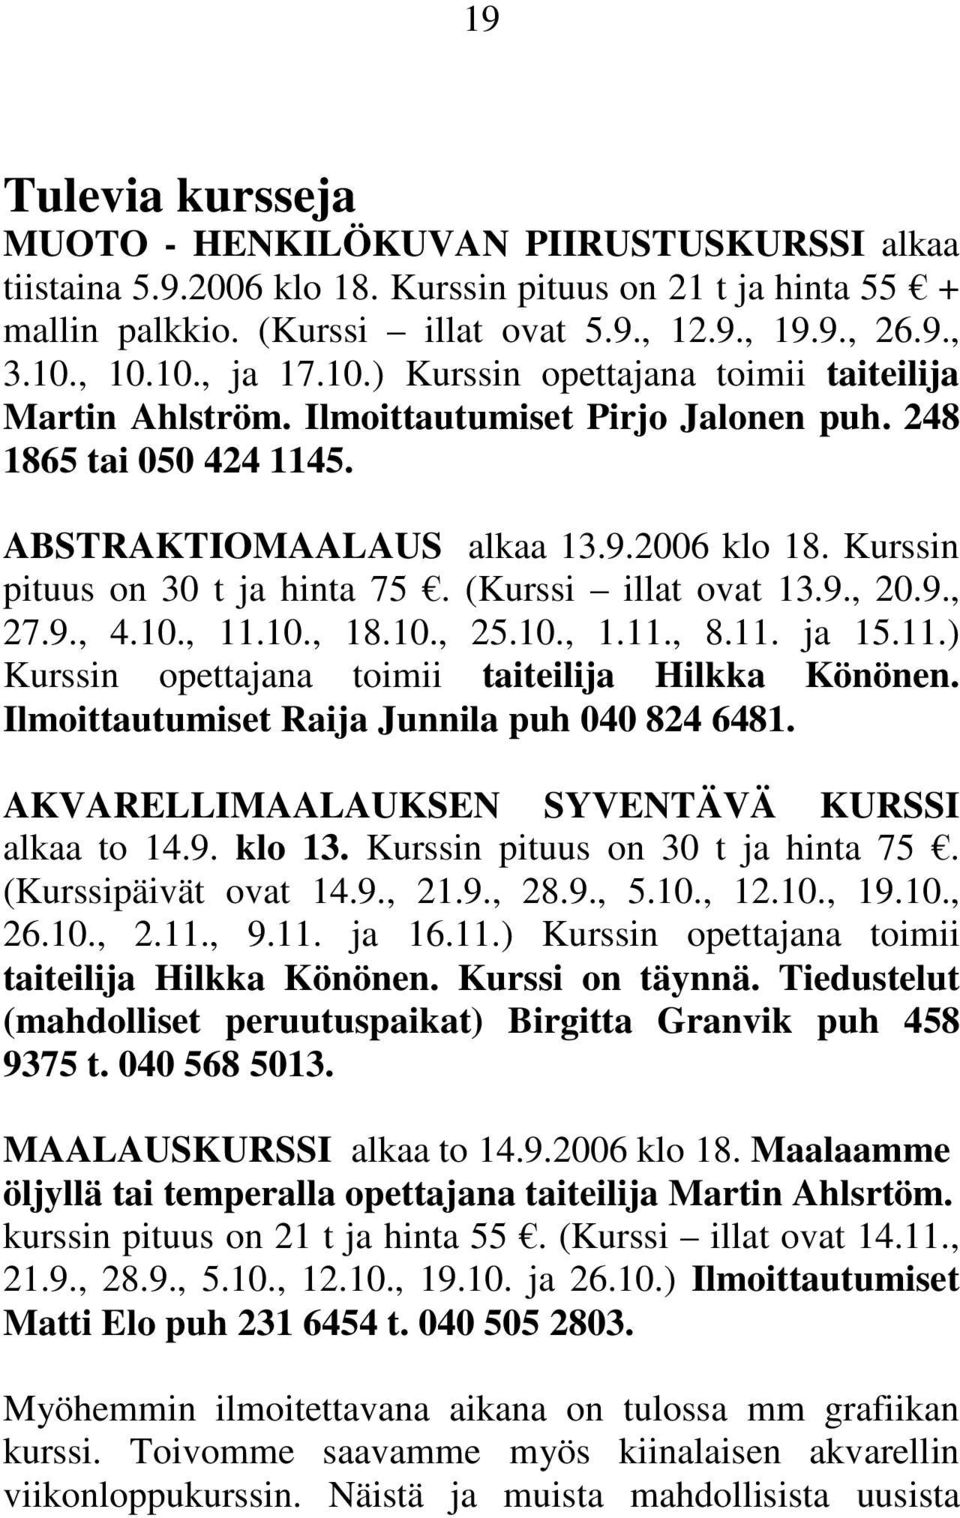 Kurssin pituus on 30 t ja hinta 75. (Kurssi illat ovat 13.9., 20.9., 27.9., 4.10., 11.10., 18.10., 25.10., 1.11., 8.11. ja 15.11.) Kurssin opettajana toimii taiteilija Hilkka Könönen.